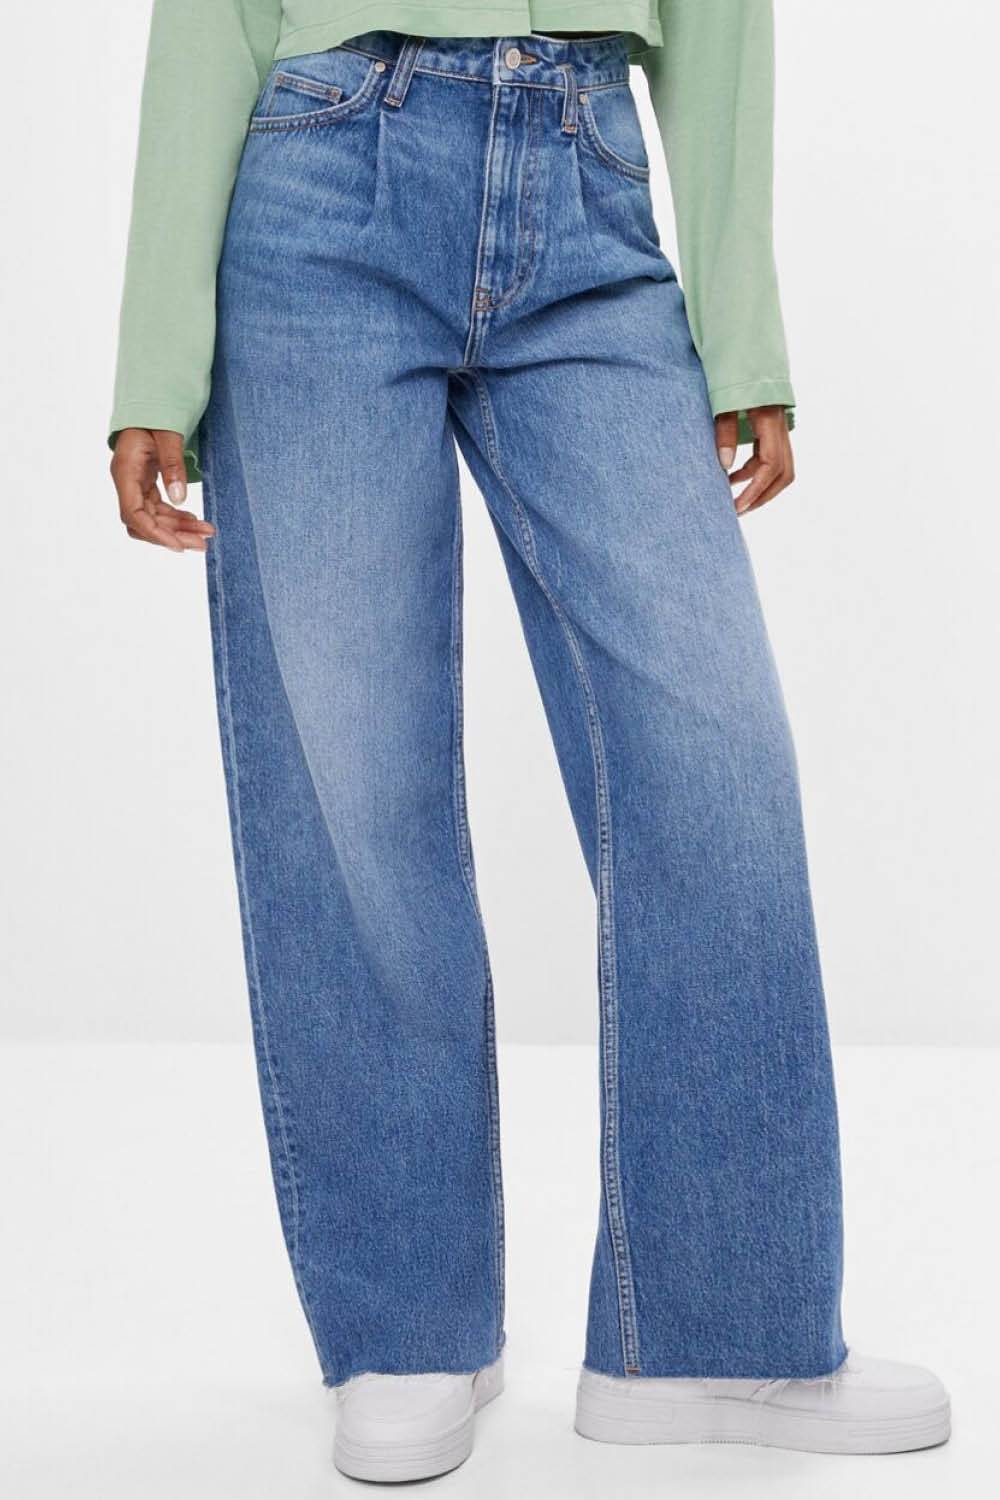 Grandpa jeans- Bershka pinzas